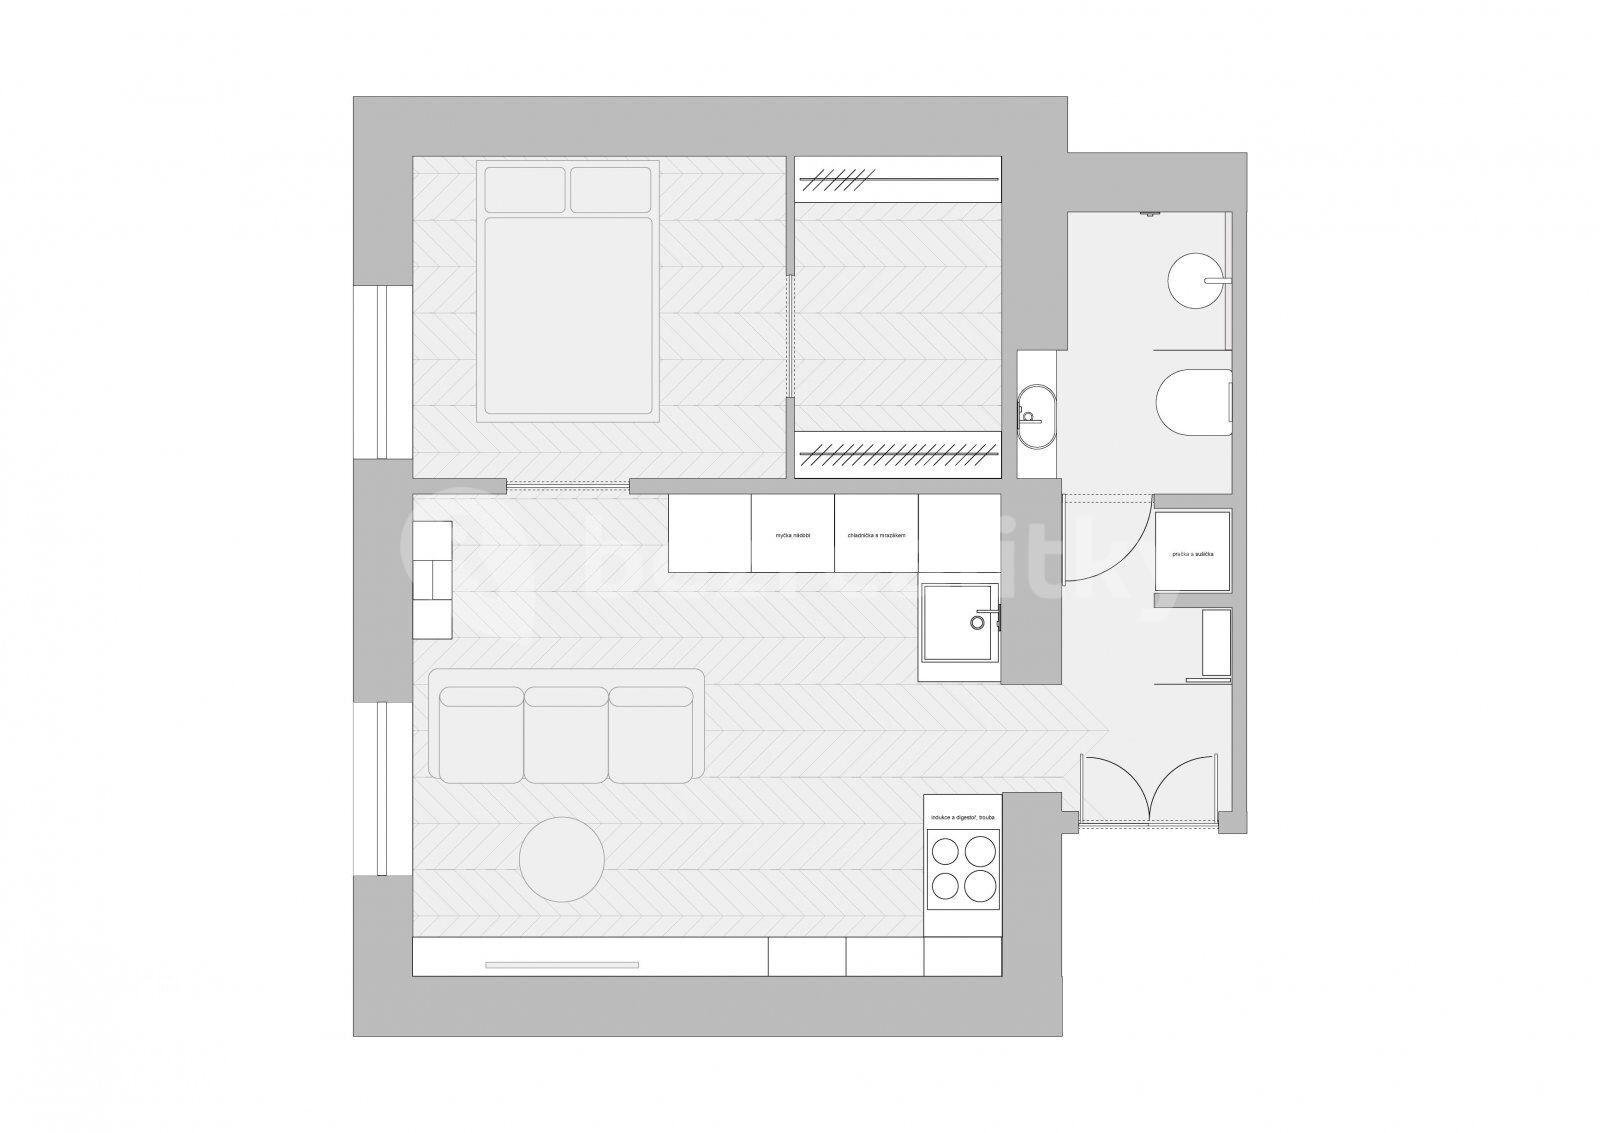 Pronájem bytu 2+kk 46 m², 28. pluku, Praha, Praha